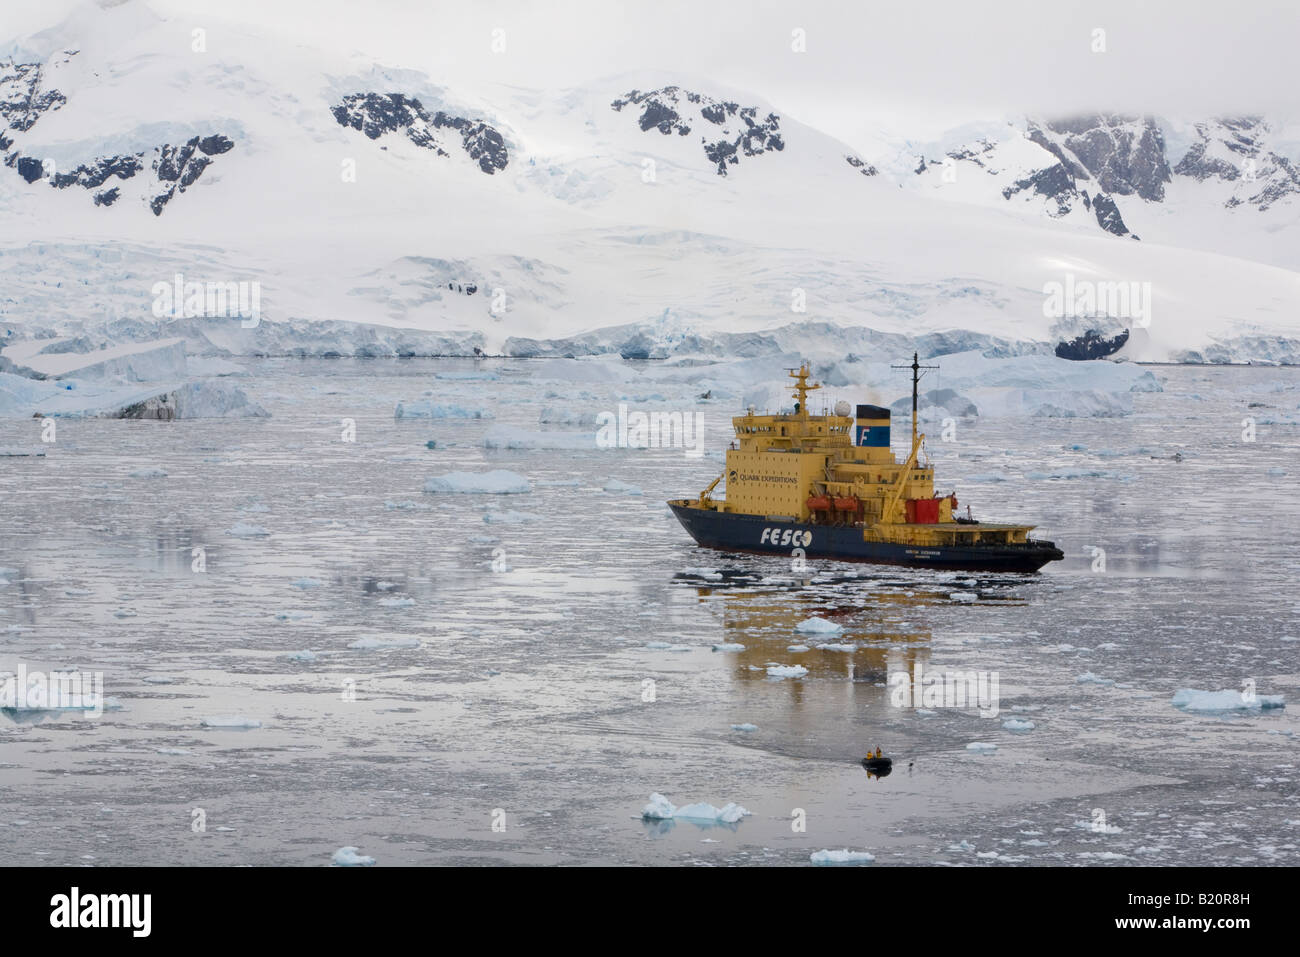 Petite brise-glace de zodiac mène vers port Neko Harbour Péninsule Antarctique, les glaciers, les montagnes couvertes de neige, de belles réflexions dans la banquise Banque D'Images